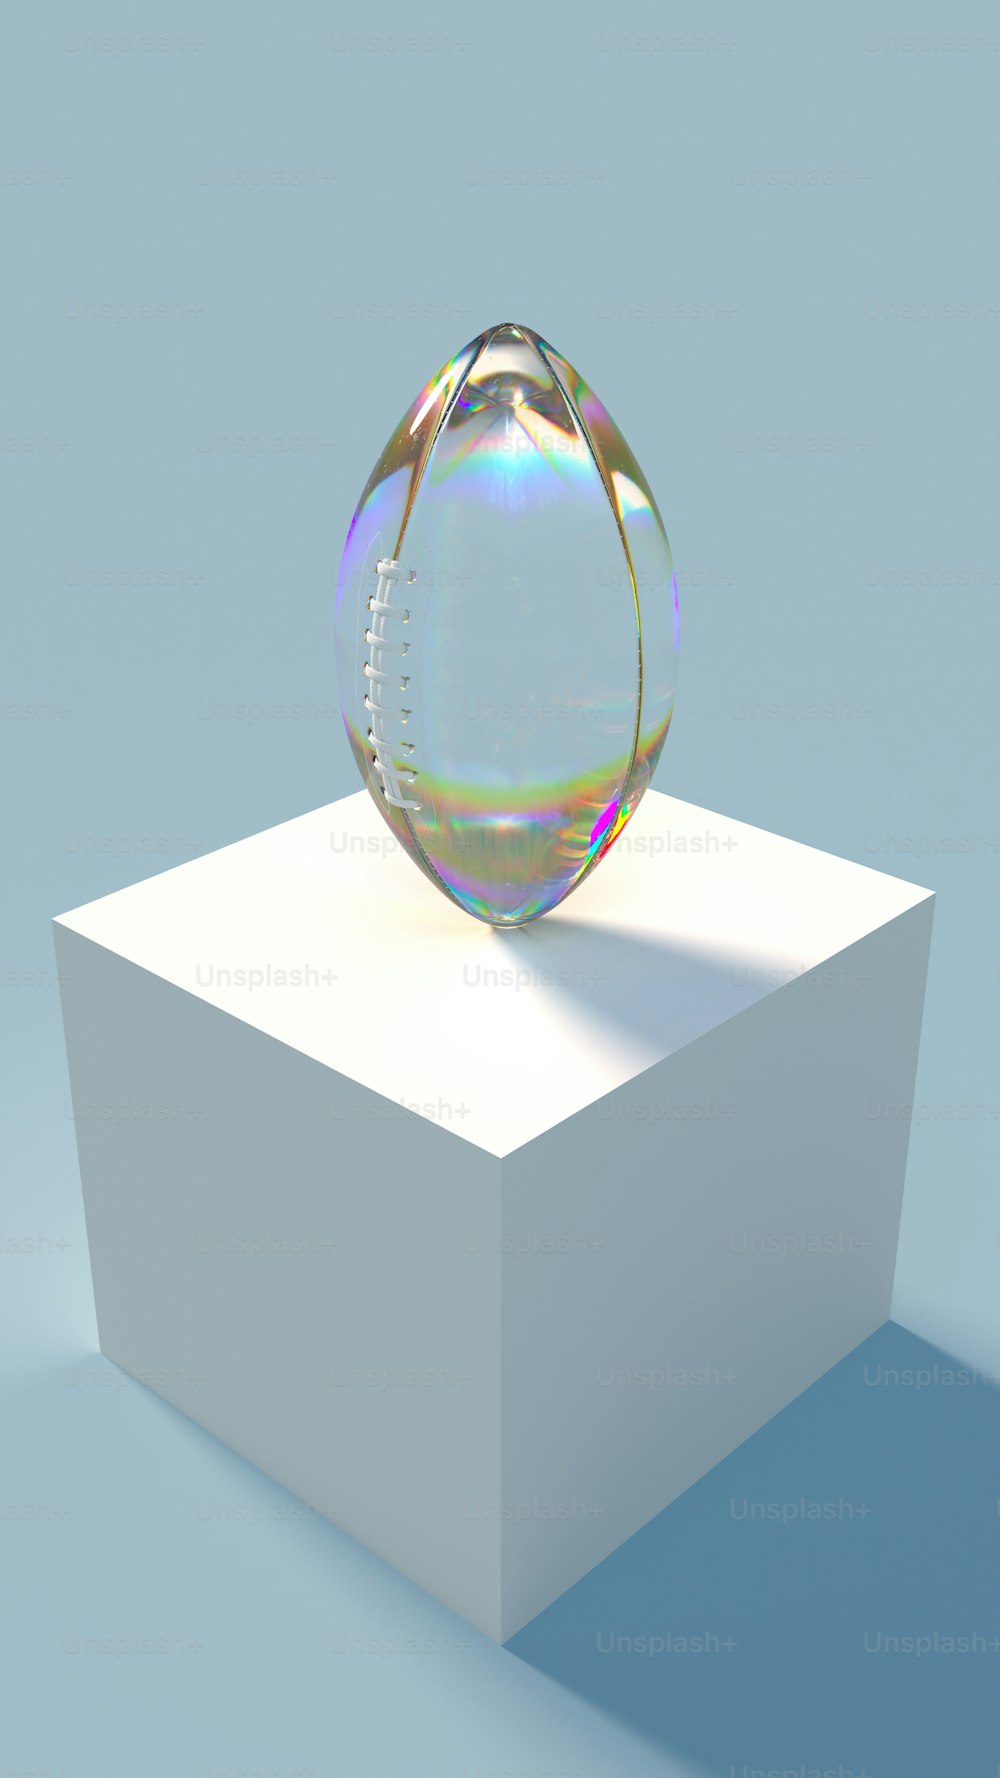 Una sfera di cristallo seduta sopra una scatola bianca